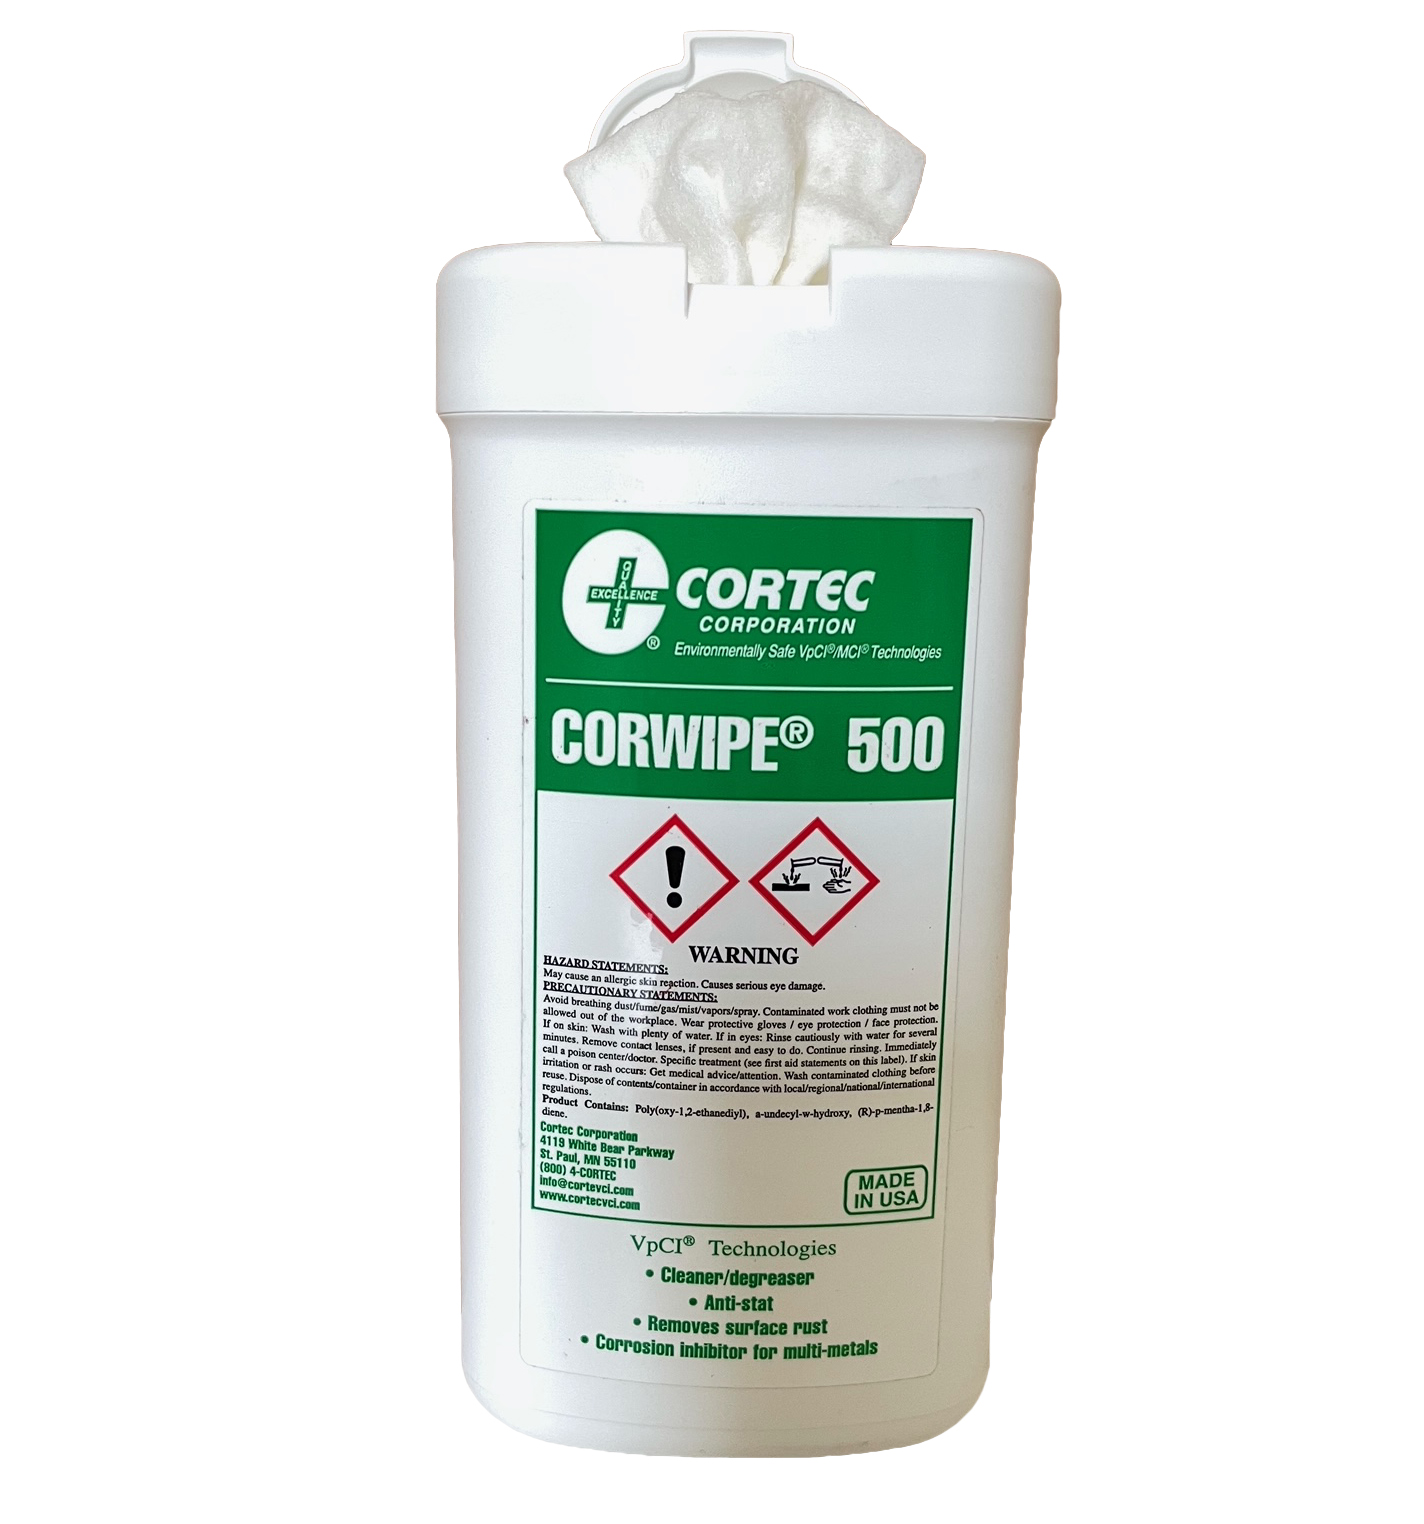 Cortec Corwipe® 500